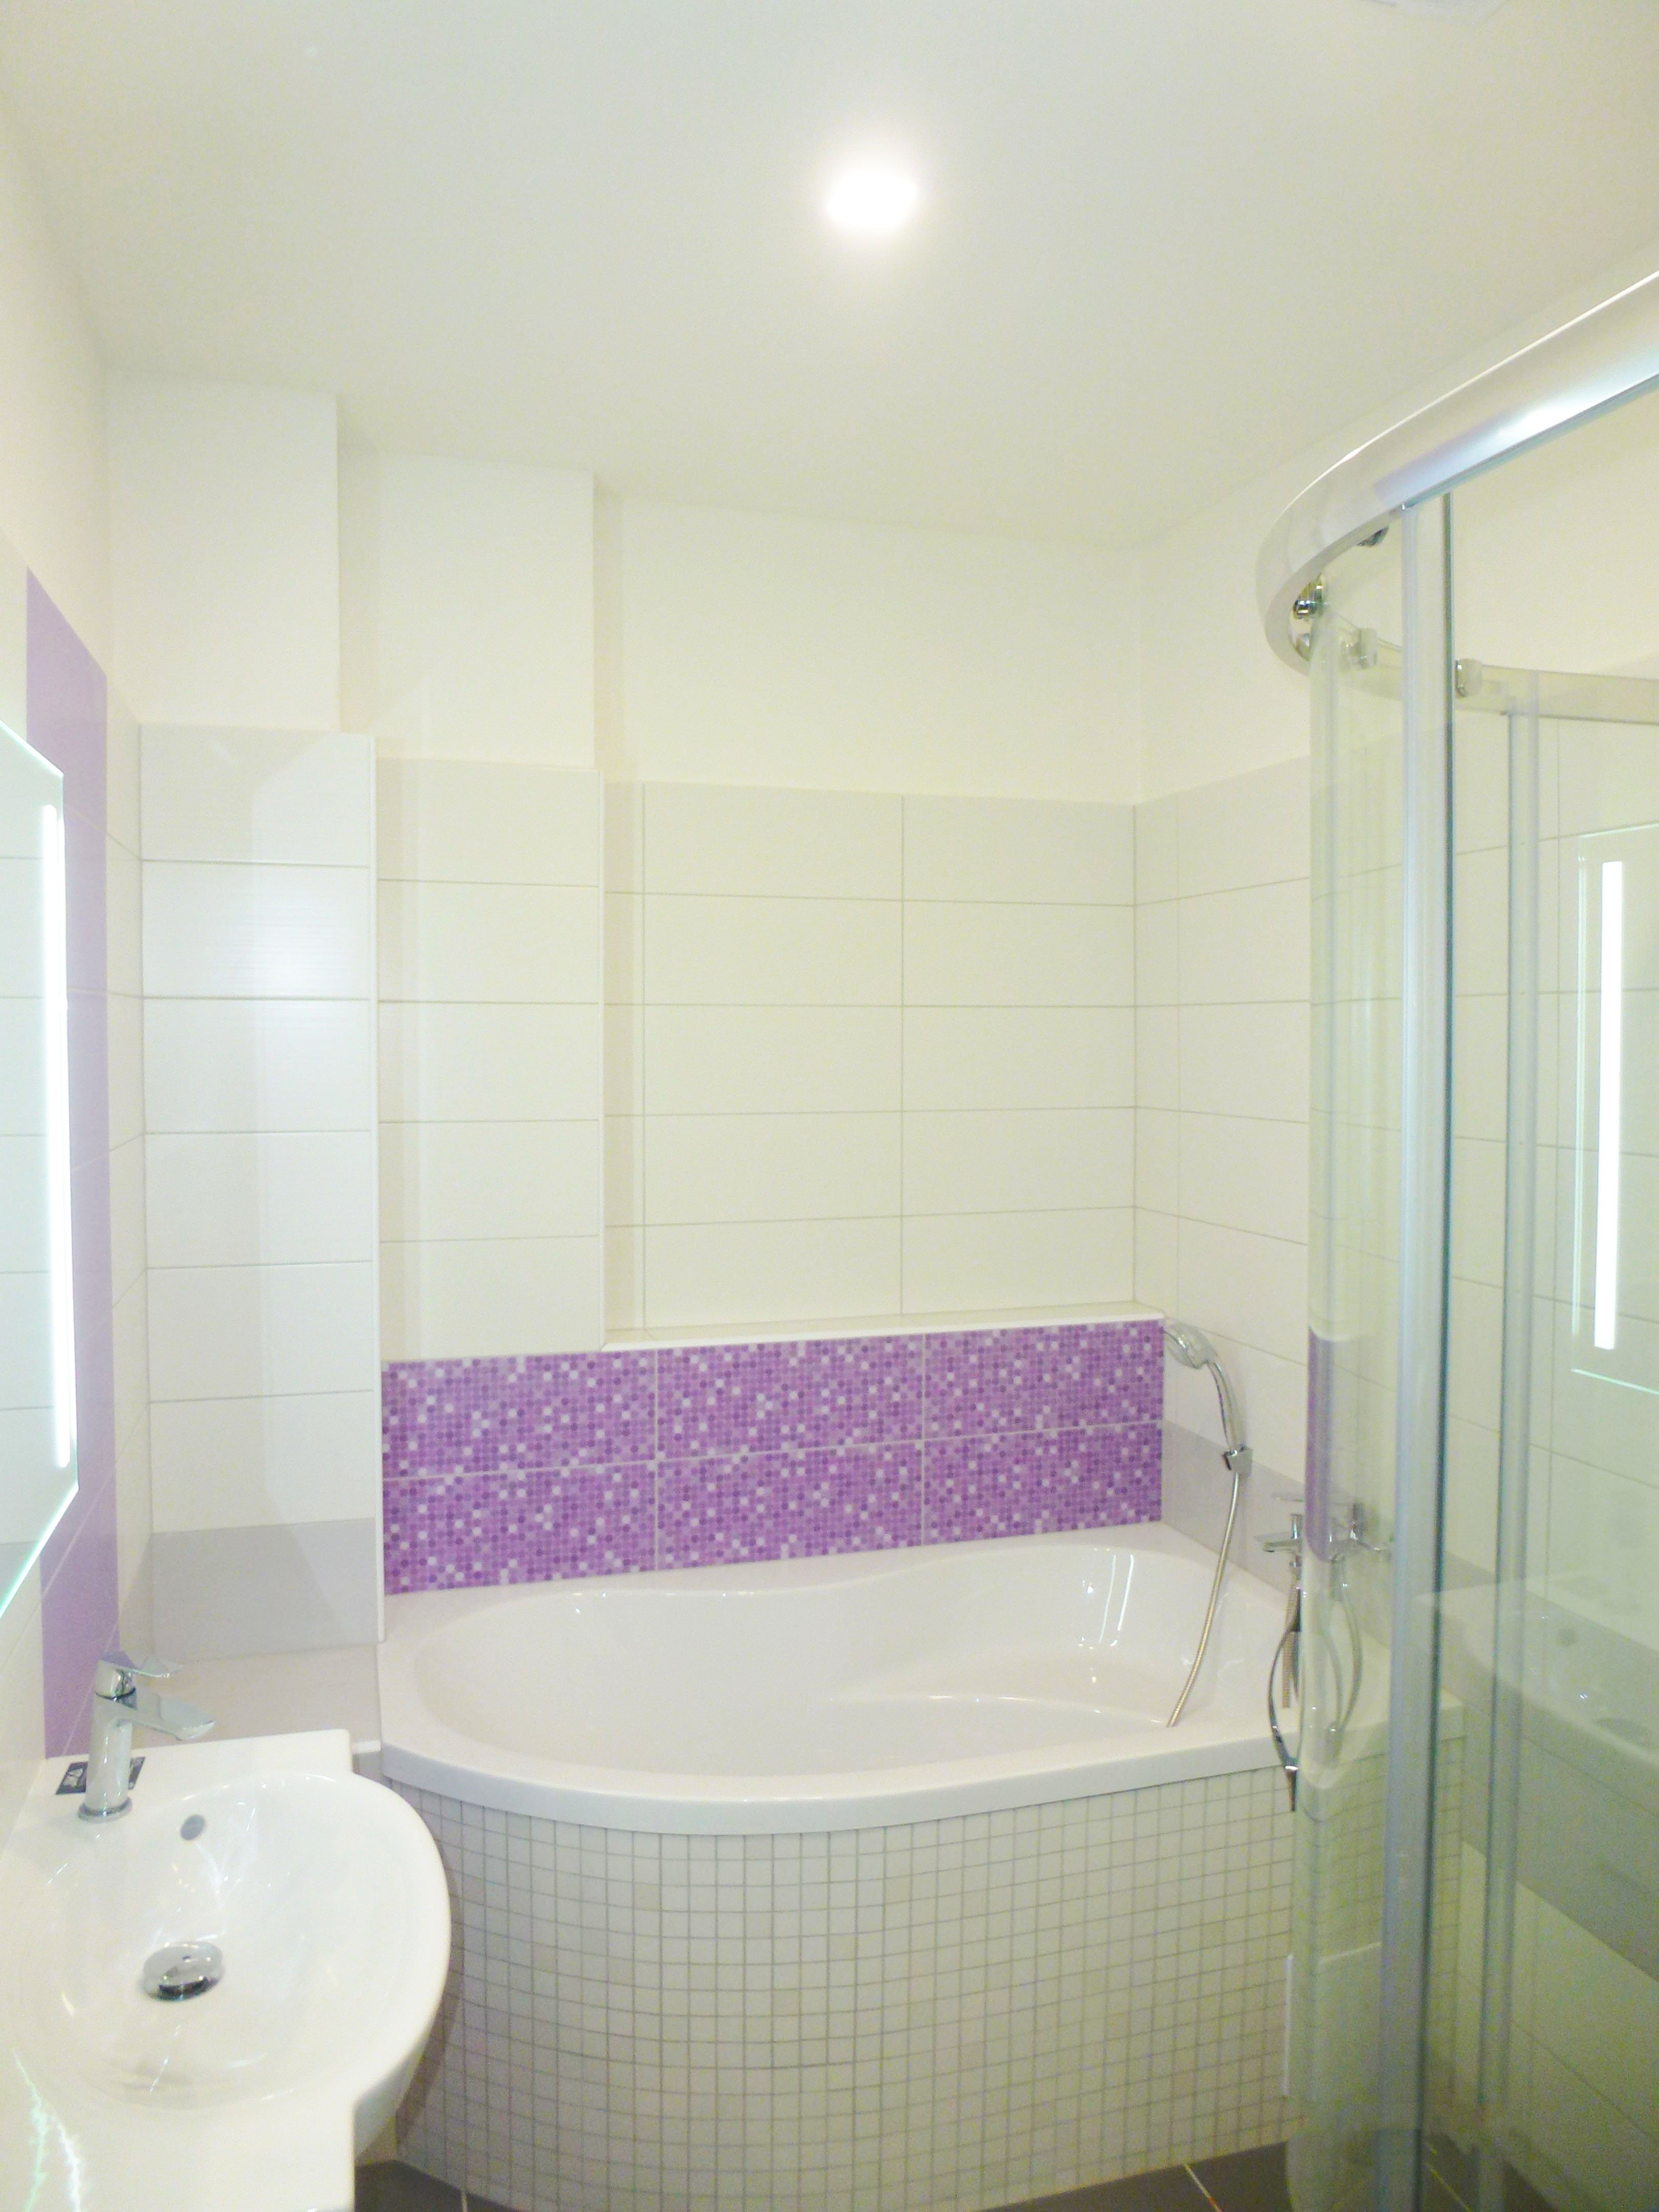 A37 Rekonstrukce koupelny - fialová, bílá, šedá, Svitavy